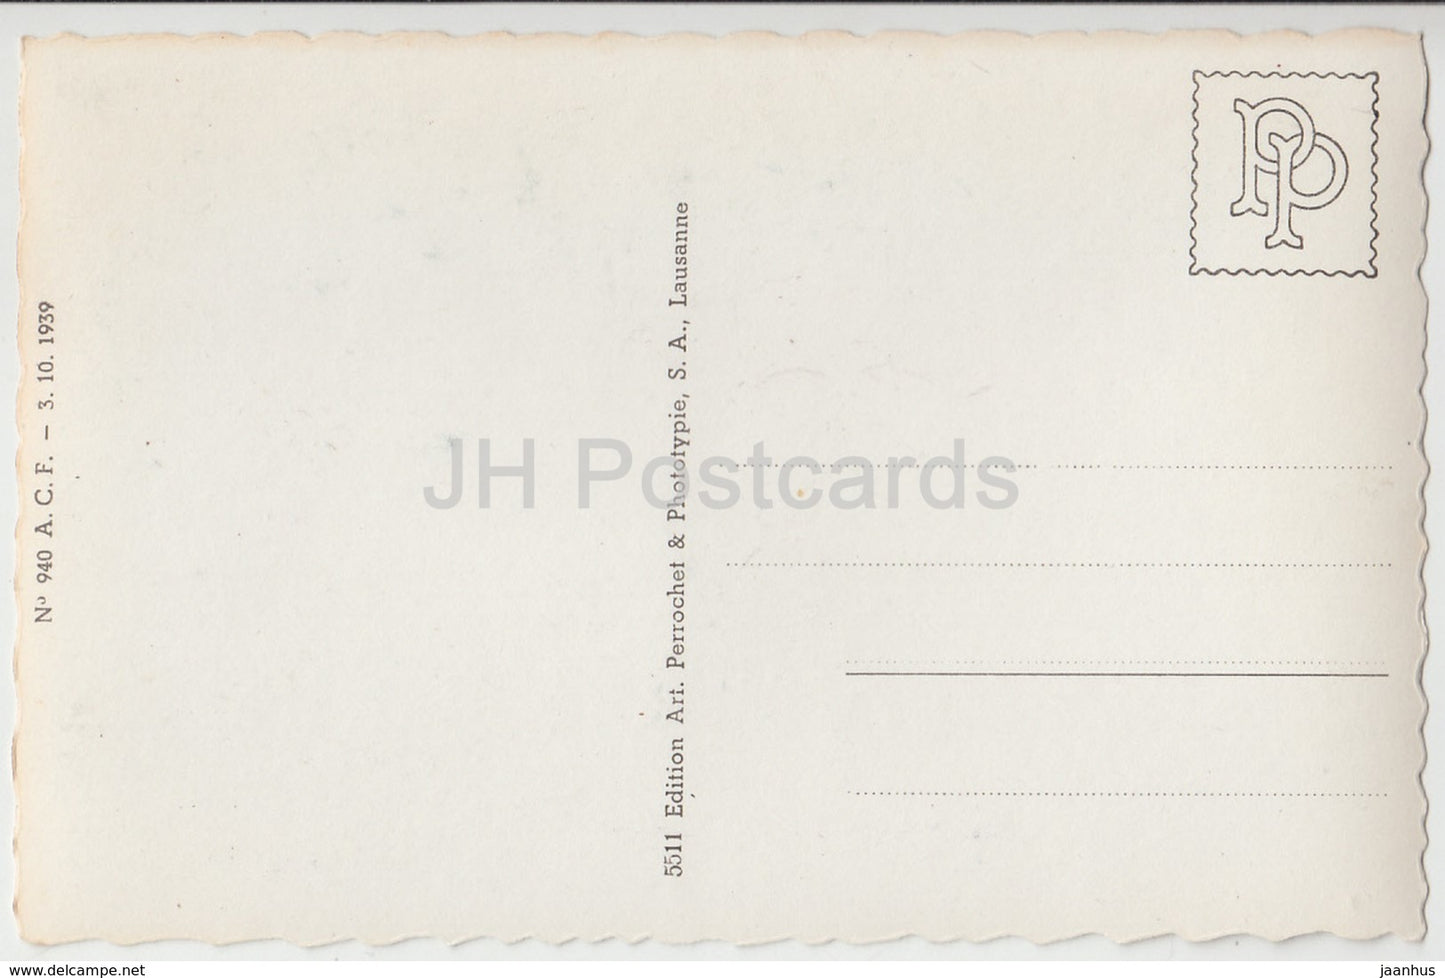 Morges - port - château - château - Vufflens - multiview - 940 - Suisse - cartes postales anciennes - inutilisées